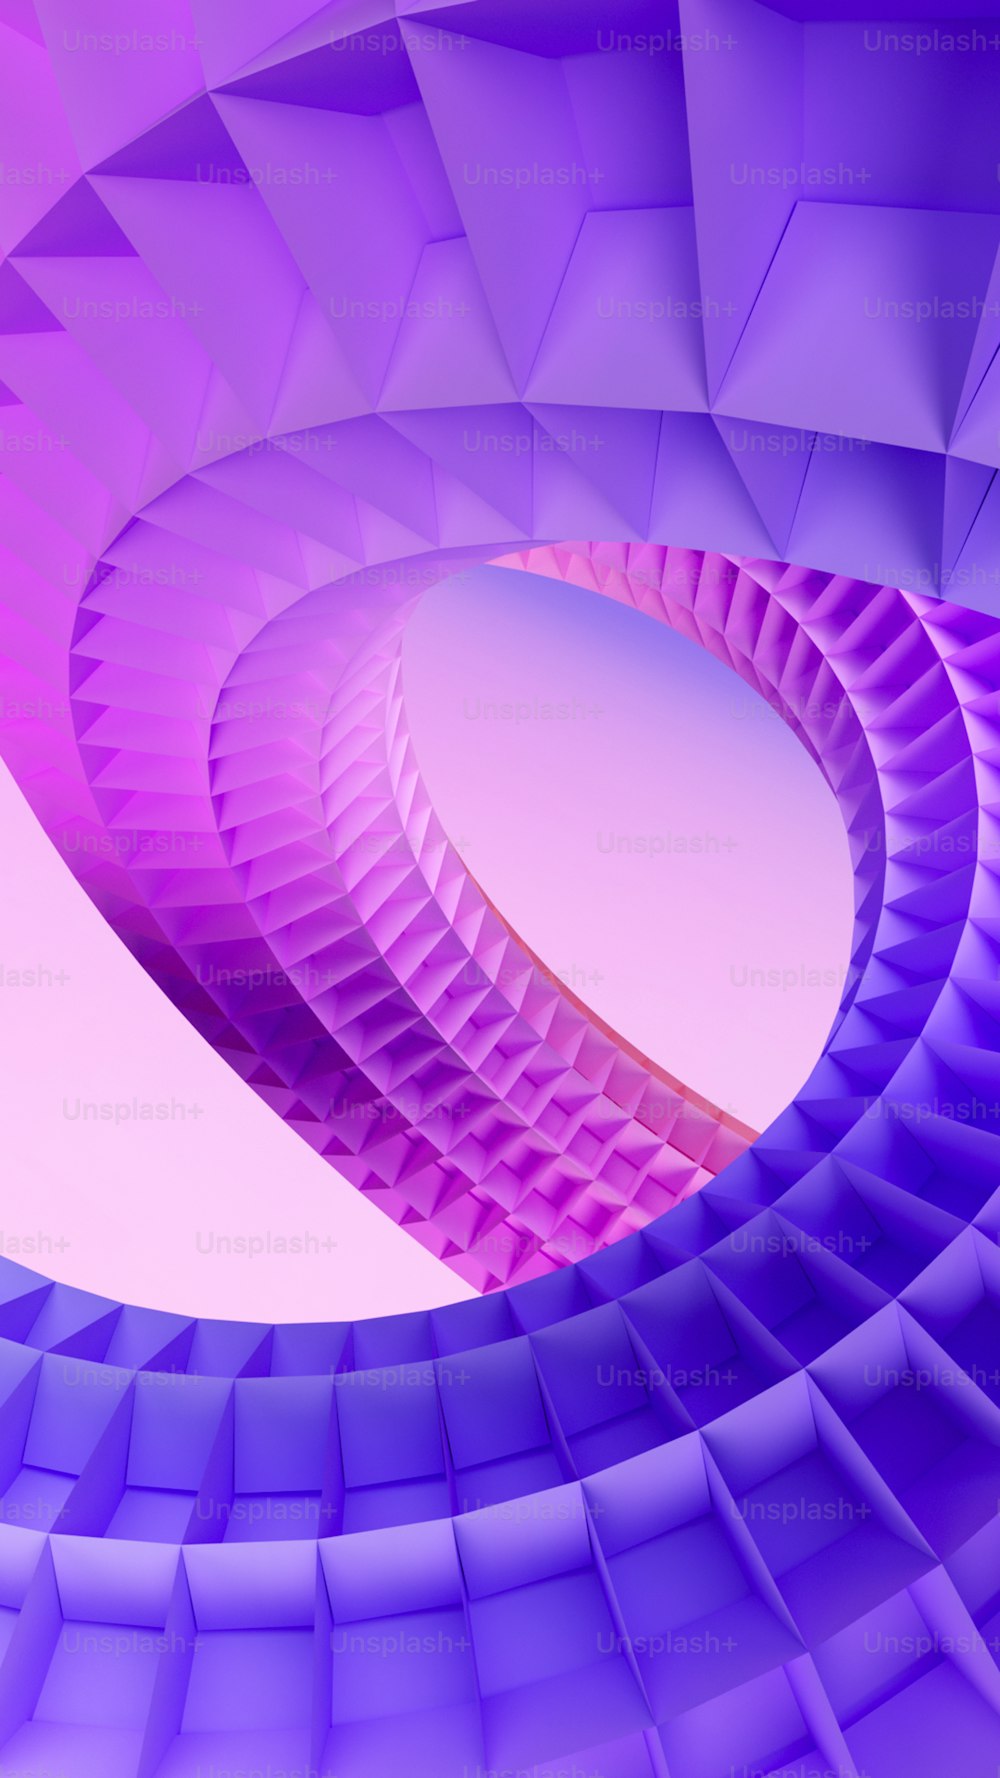 Una imagen abstracta de una estructura en forma de espiral